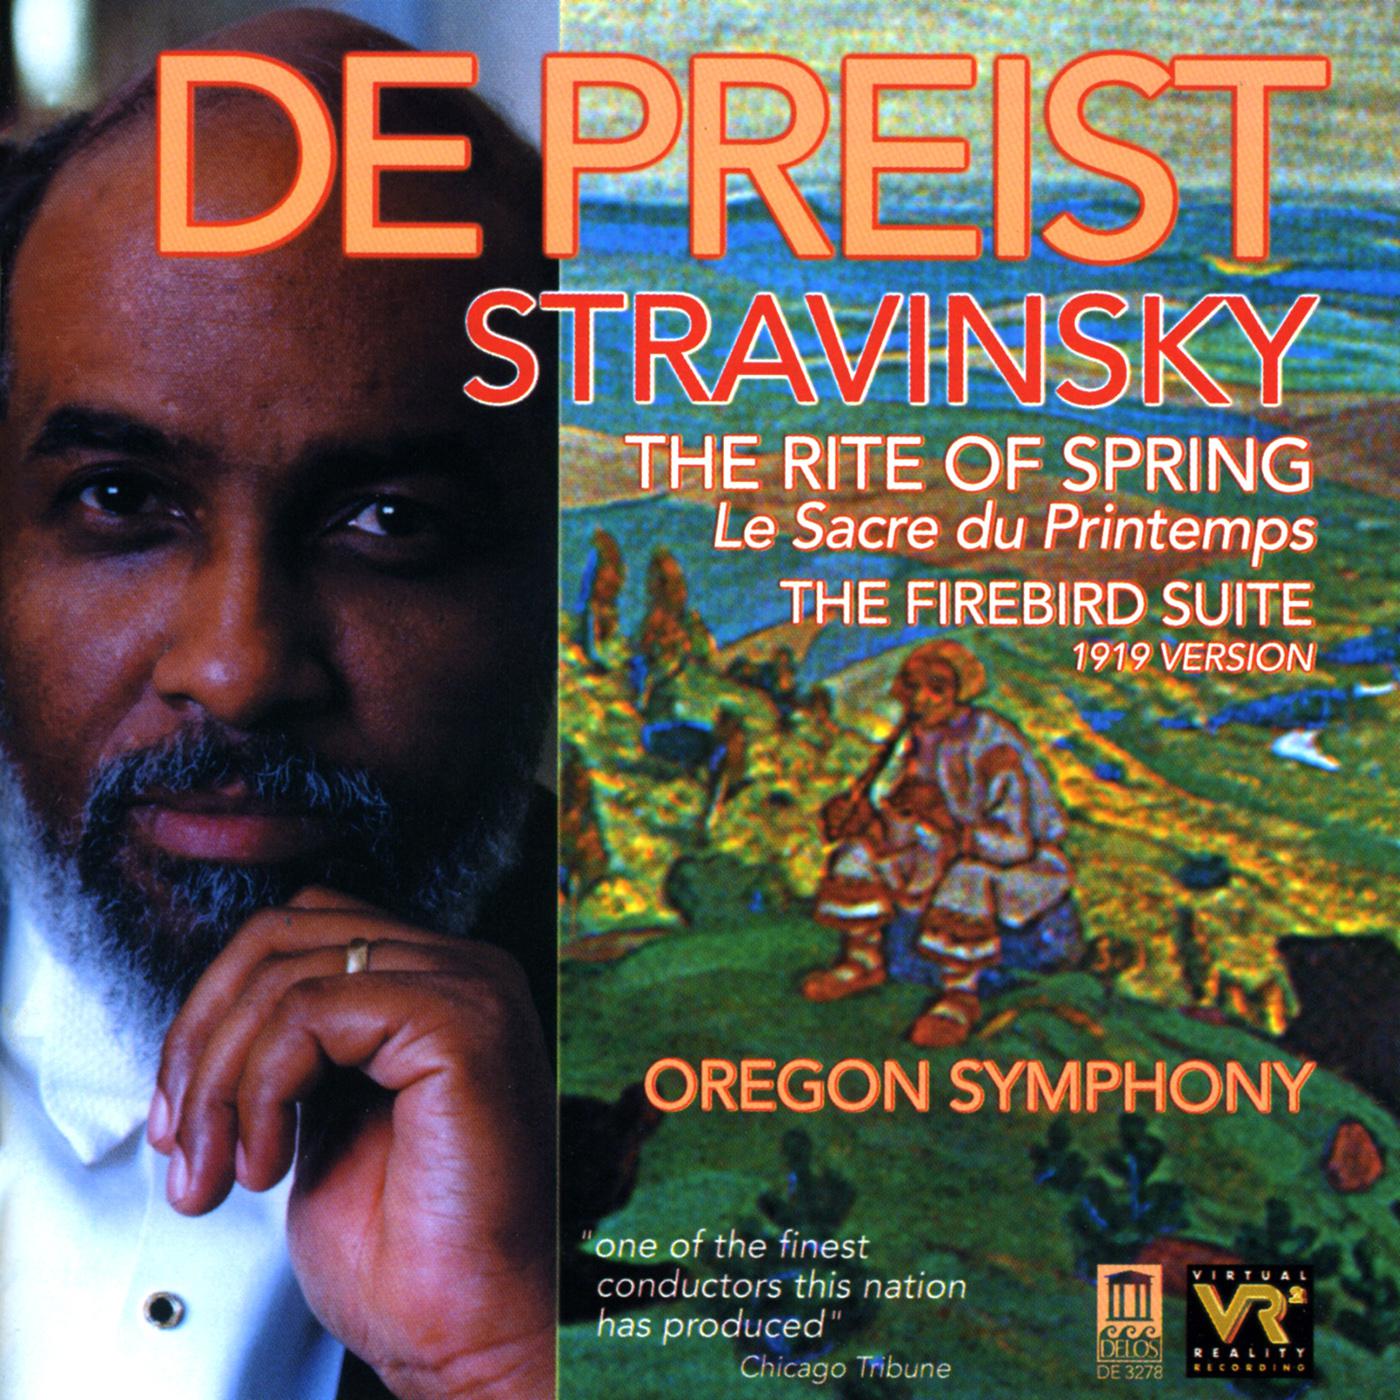 Oregon Symphony - Le sacre du printemps (The Rite of Spring):Part II: The Sacrifice: Sacrificial Dance